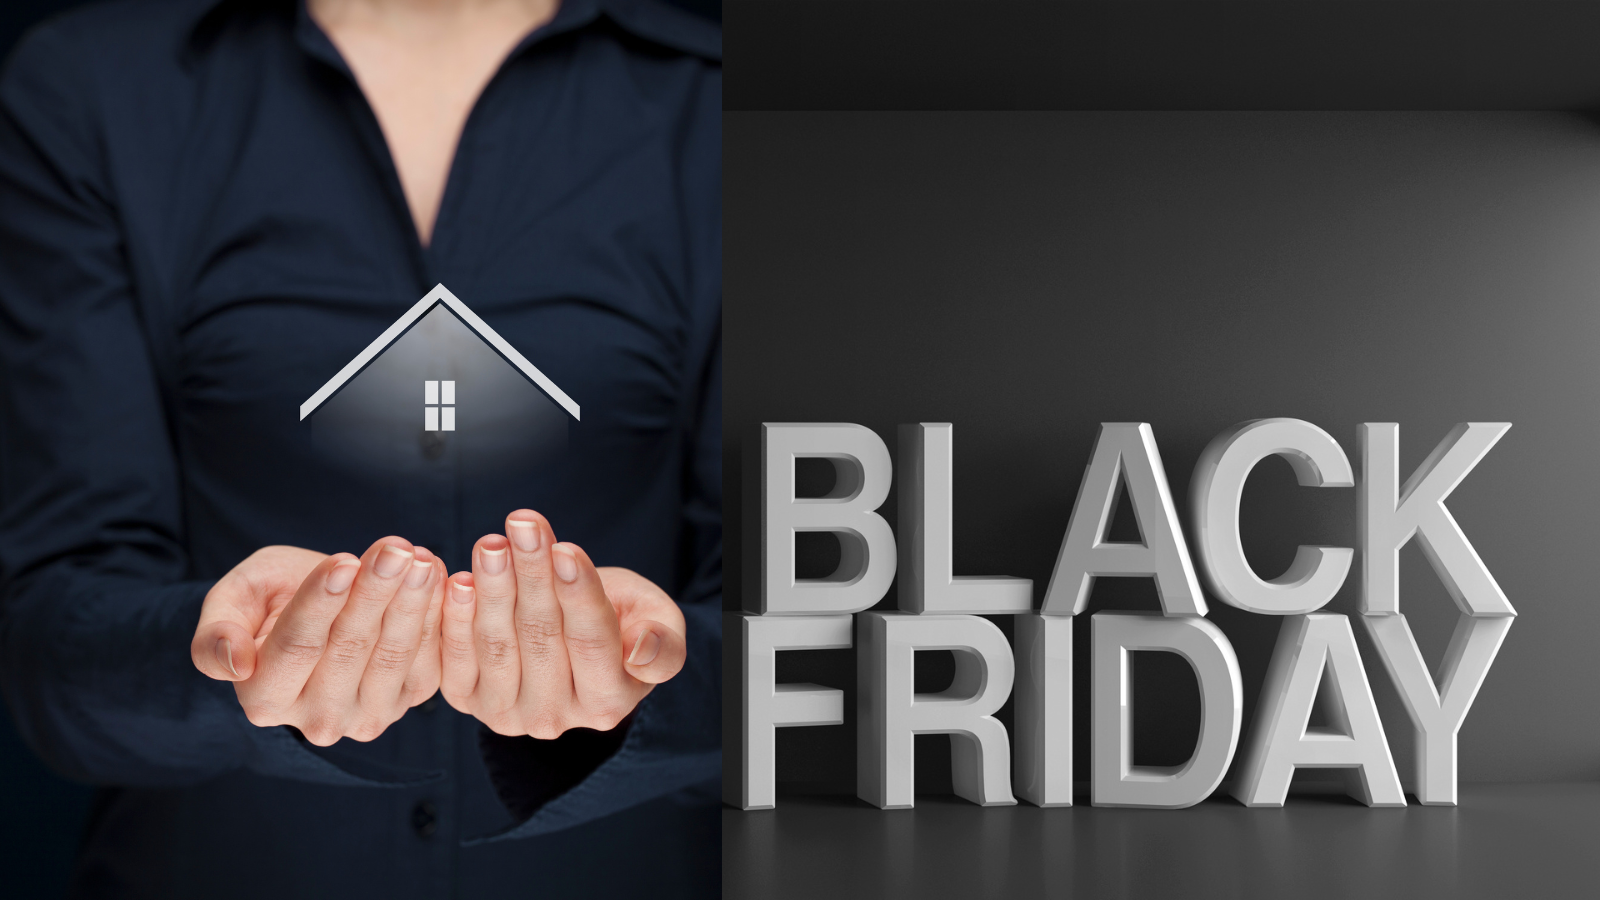 Black Friday y mundo inmobiliario: ¿una buena combinación?